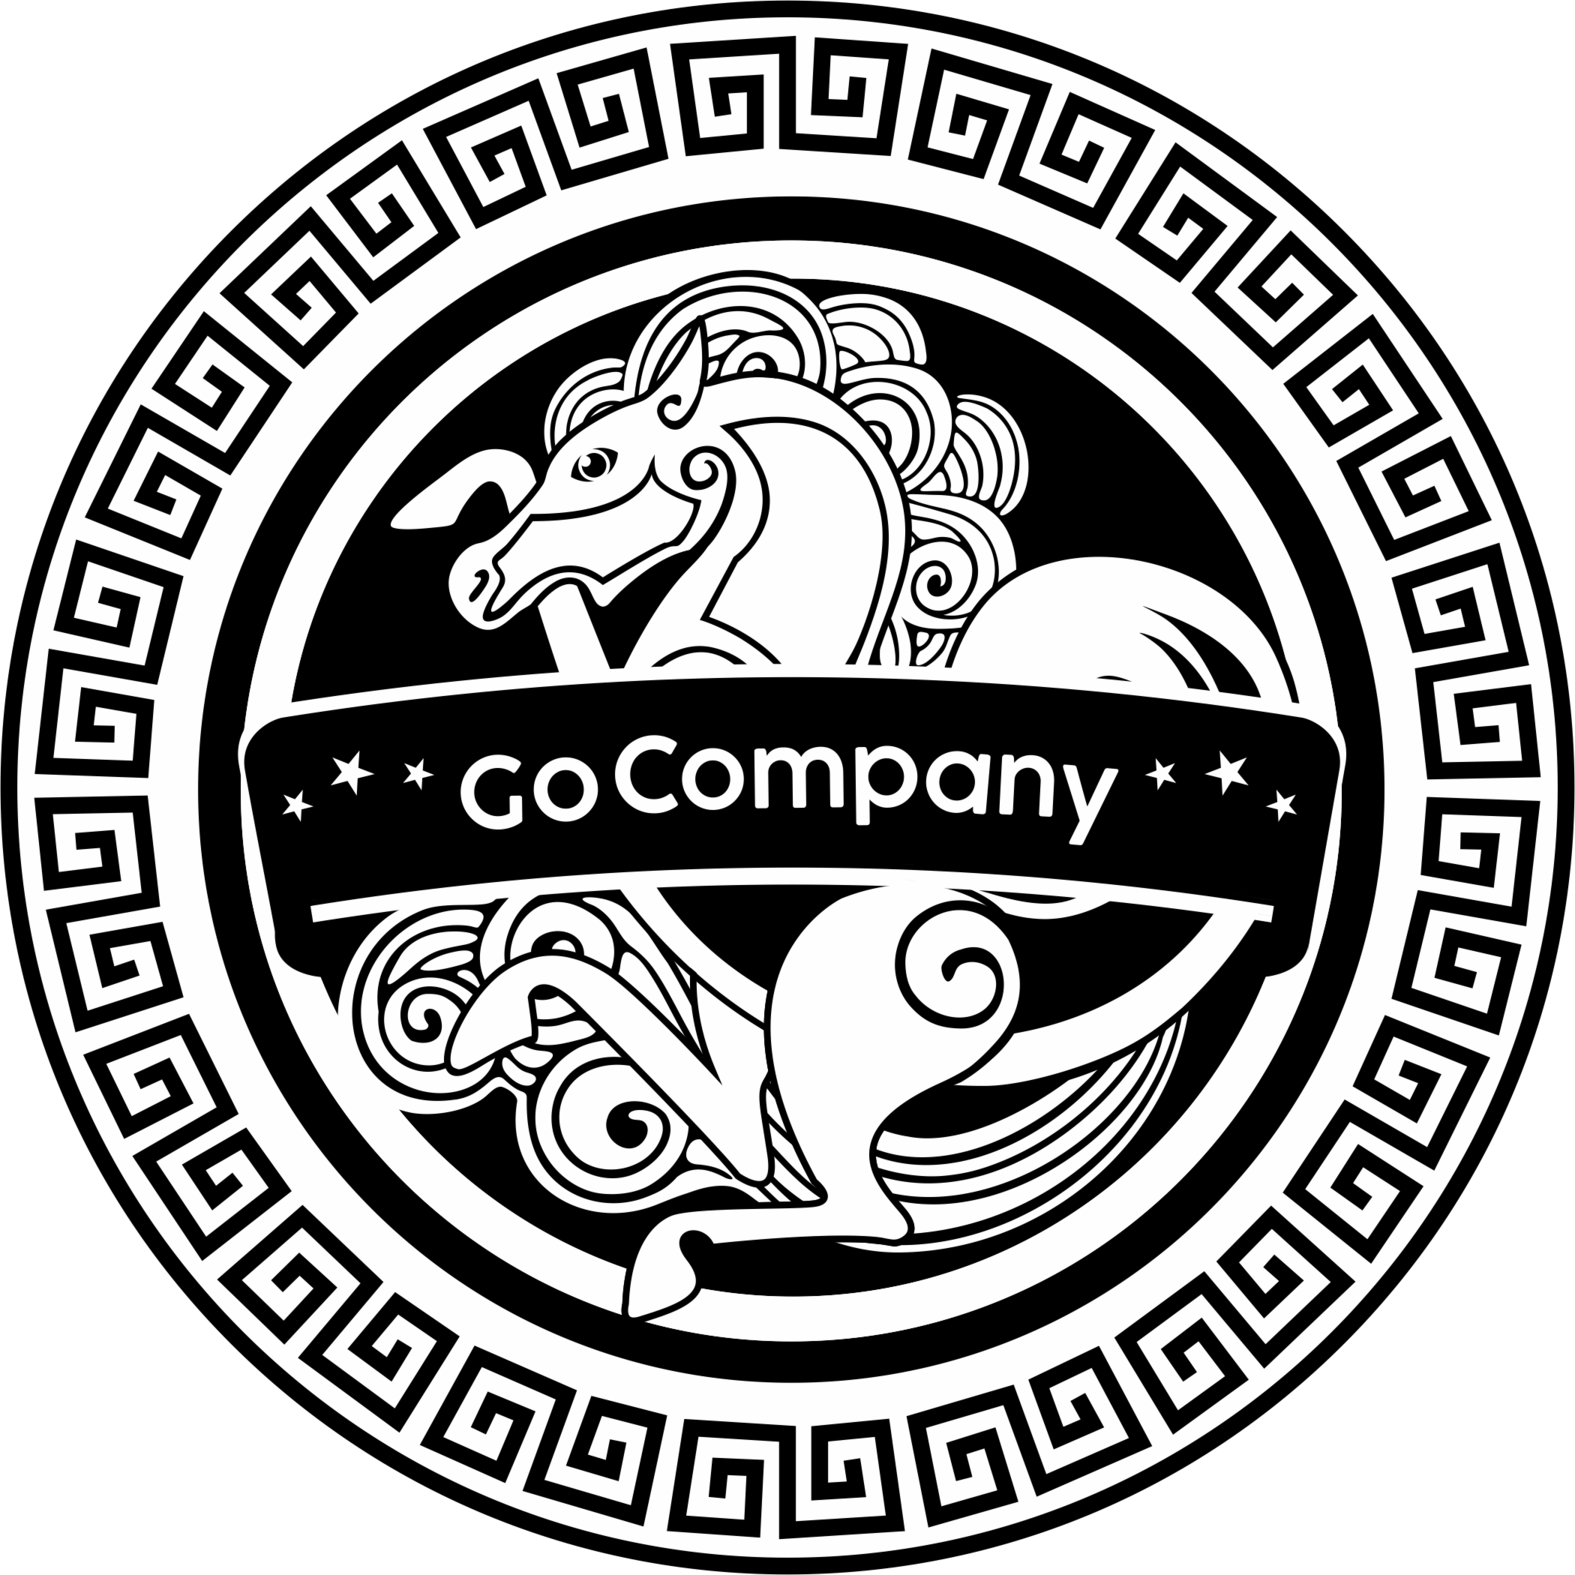 Go Company